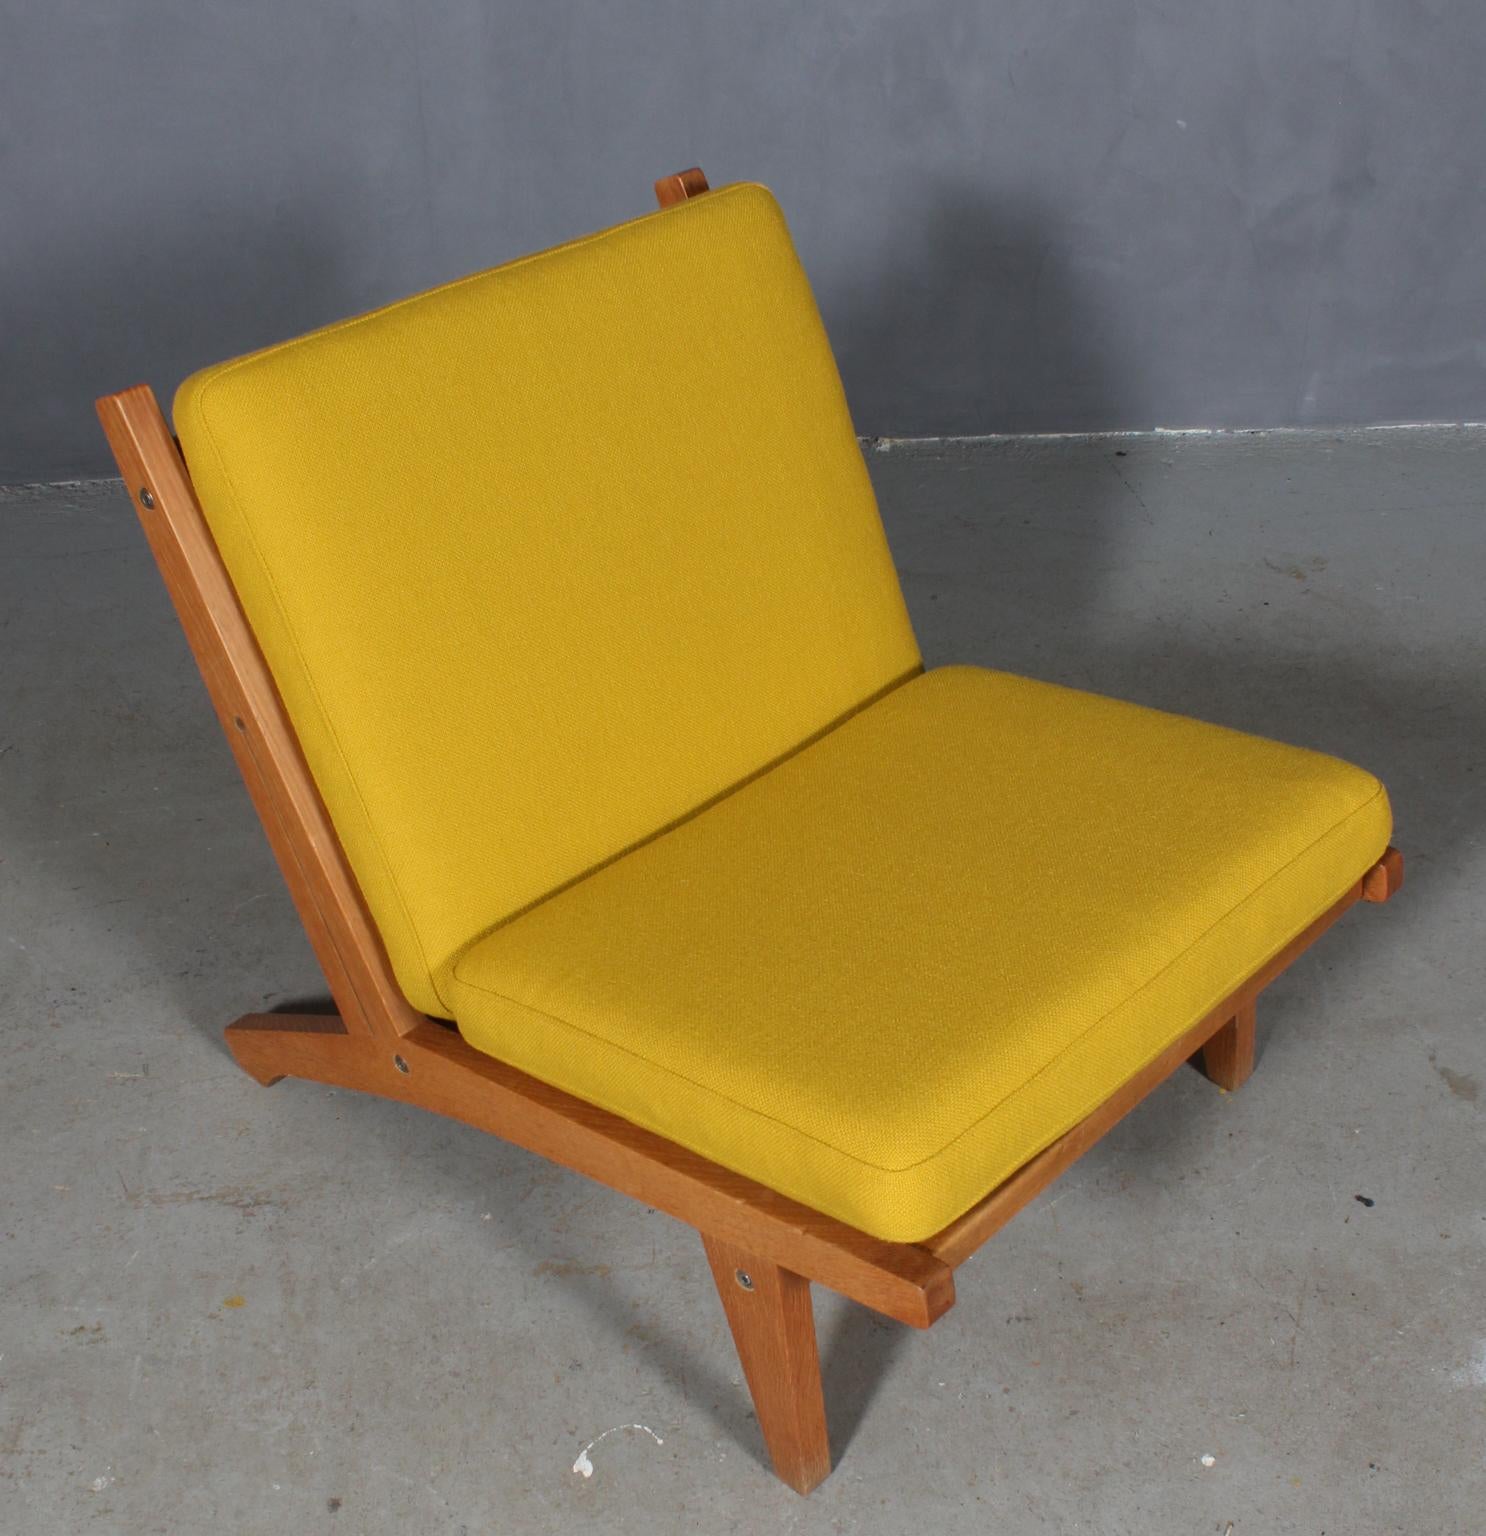 Chaise longue Hans J. Wegner avec coussins détachés, nouvellement recouverte de laine Hallingdal jaune de Kvadrat.

Cadre en chêne.

Modèle GE-370, fabriqué par GETAMA.